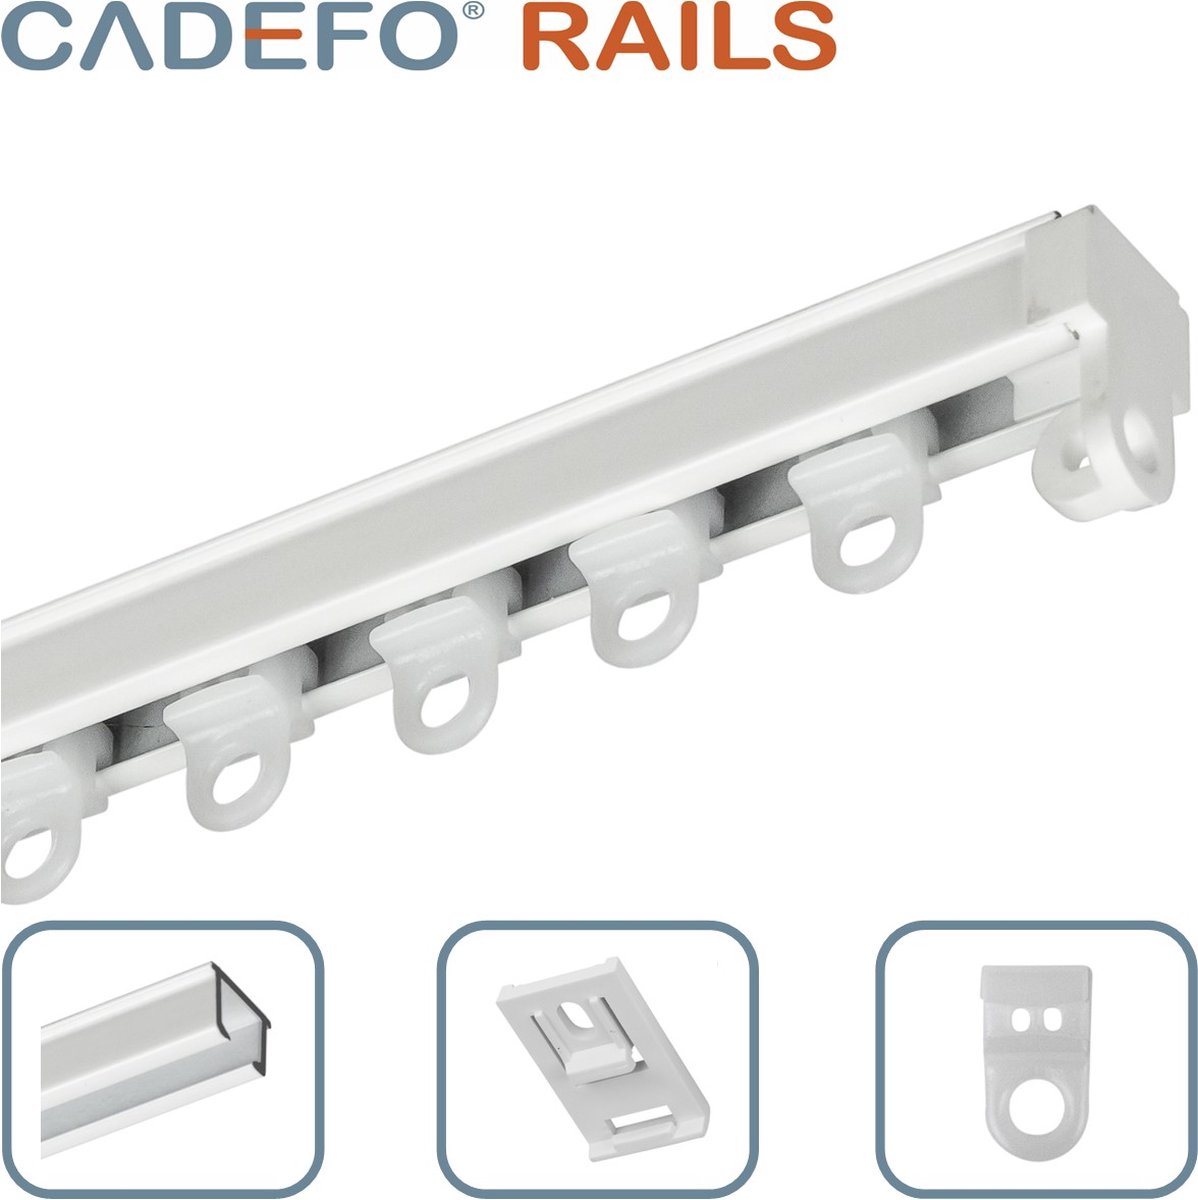 CADEFO RAILS (401 - 450 cm) Gordijnrails - Compleet op maat! - UIT 1 STUK - Leverbaar tot 6 meter - Plafondbevestiging - Lengte 446 cm